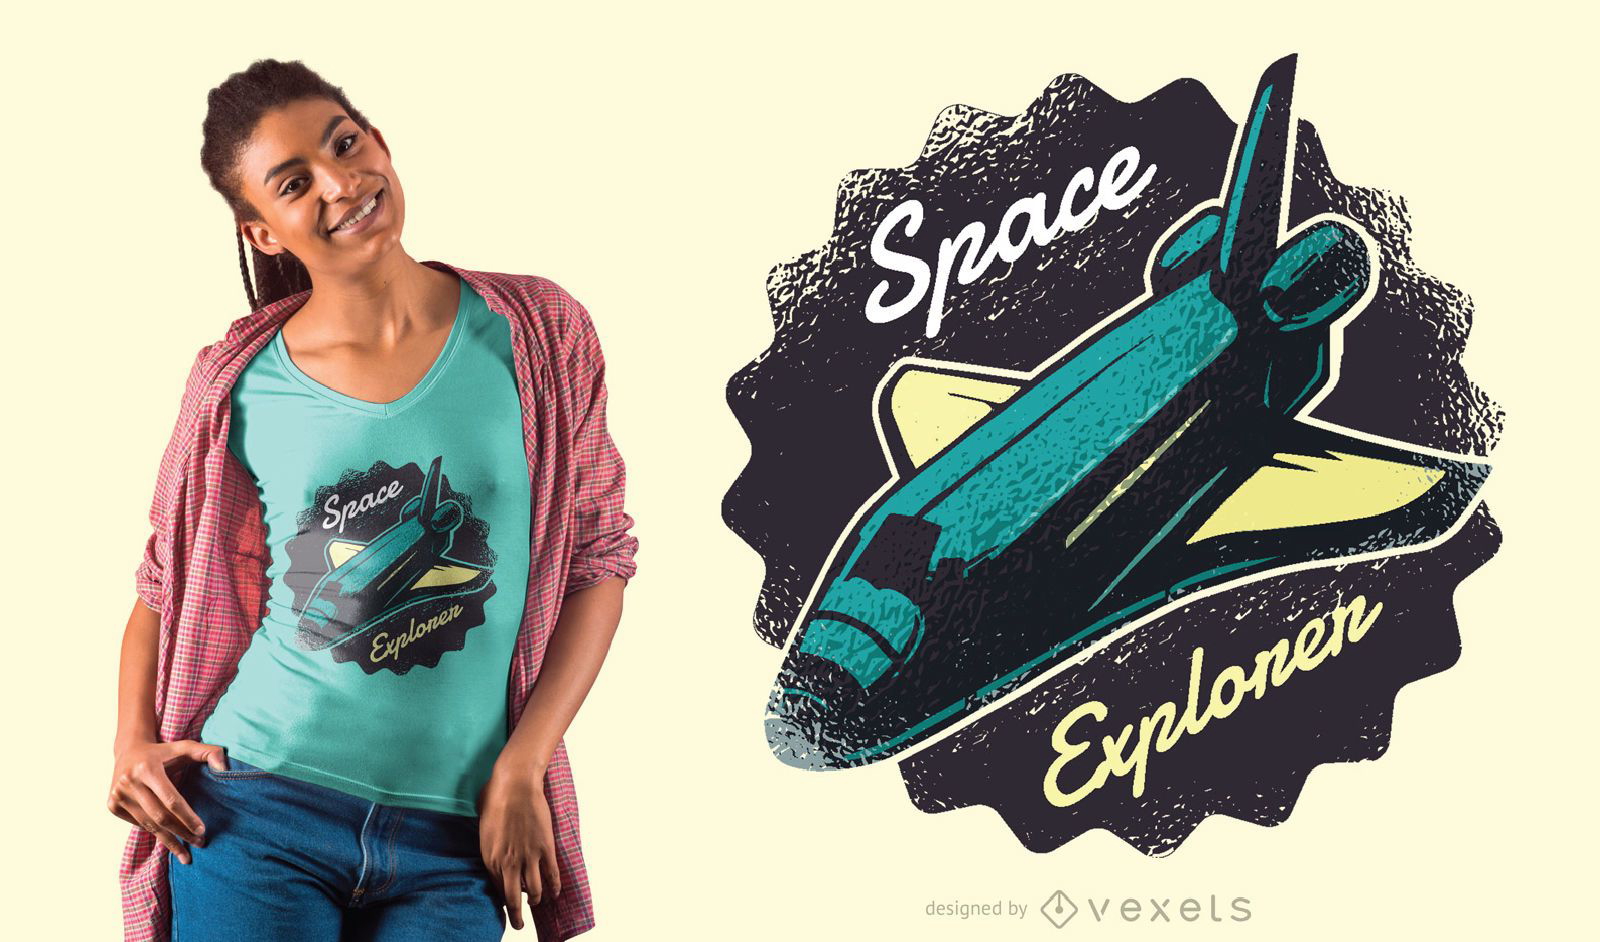 Diseño de camiseta del transbordador espacial explorador